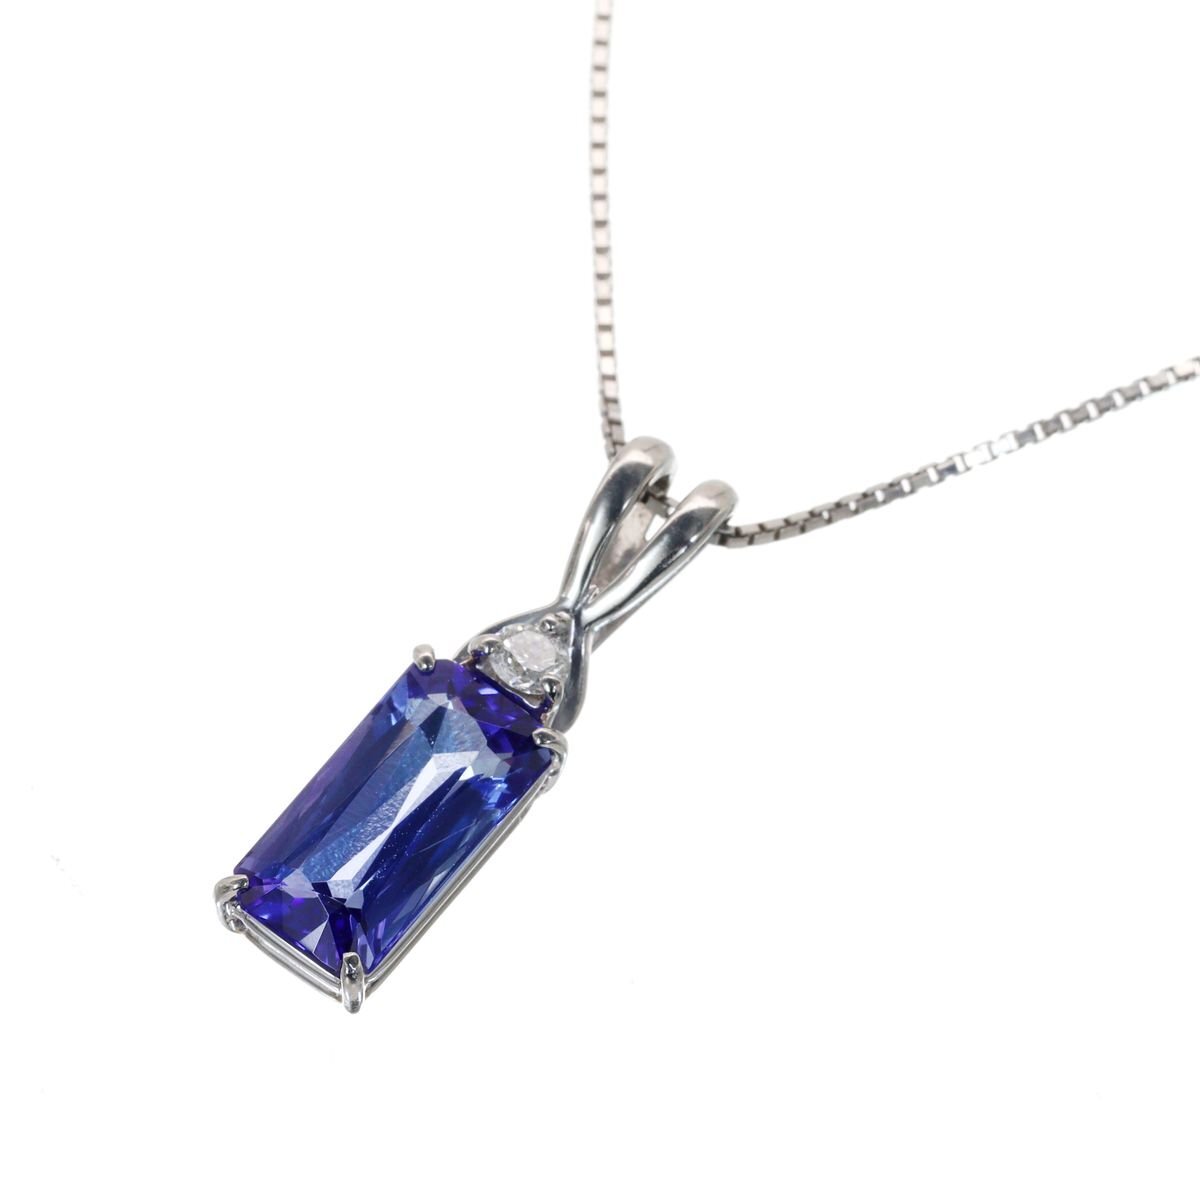 神秘的な青の煌めき Pt850/900 タンザナイト ダイヤモンド 3.6g 1.69ct 0.05ct ソーティング付 超美品 ◎04B37の画像1